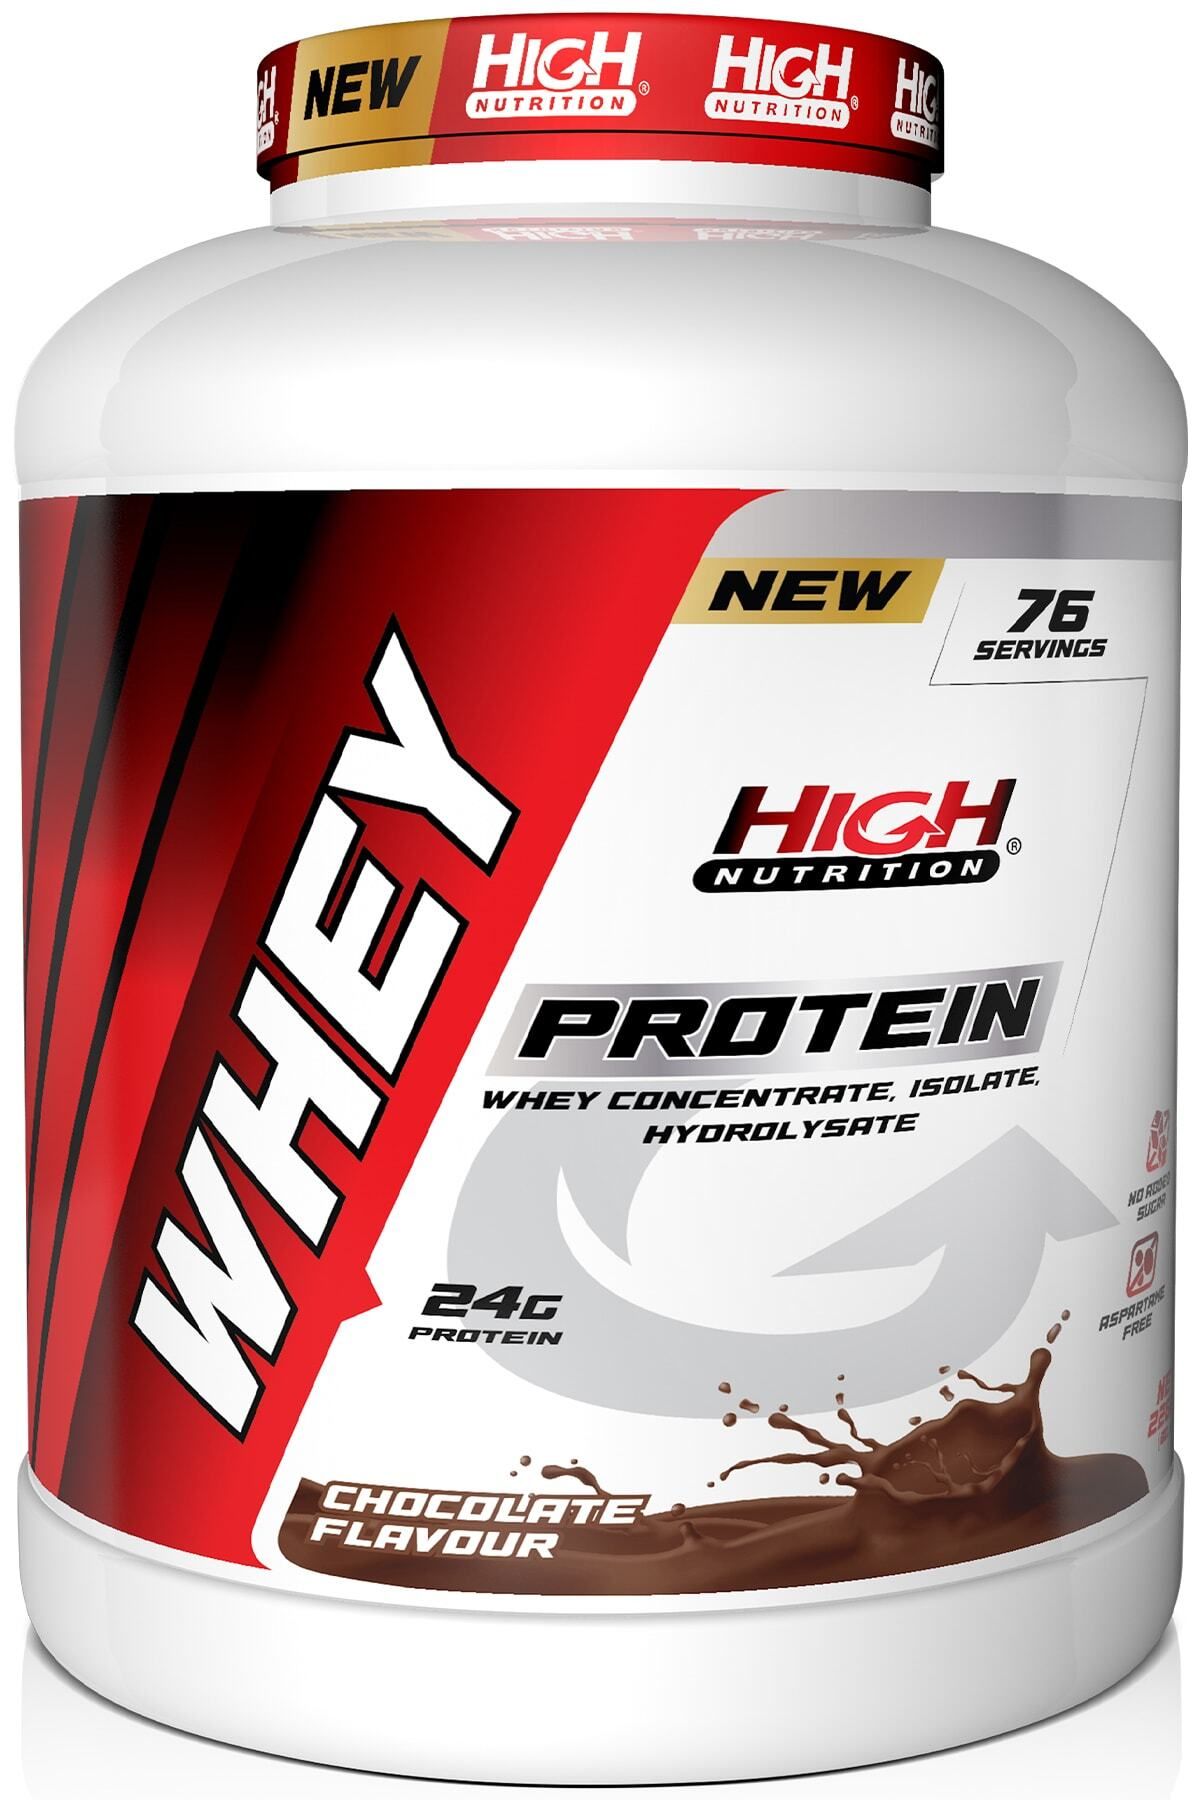 High Nutrition Protein Tozu 2280 Gr Çikolata Aromalı Whey Protein 24 Gram Protein 76 Servis